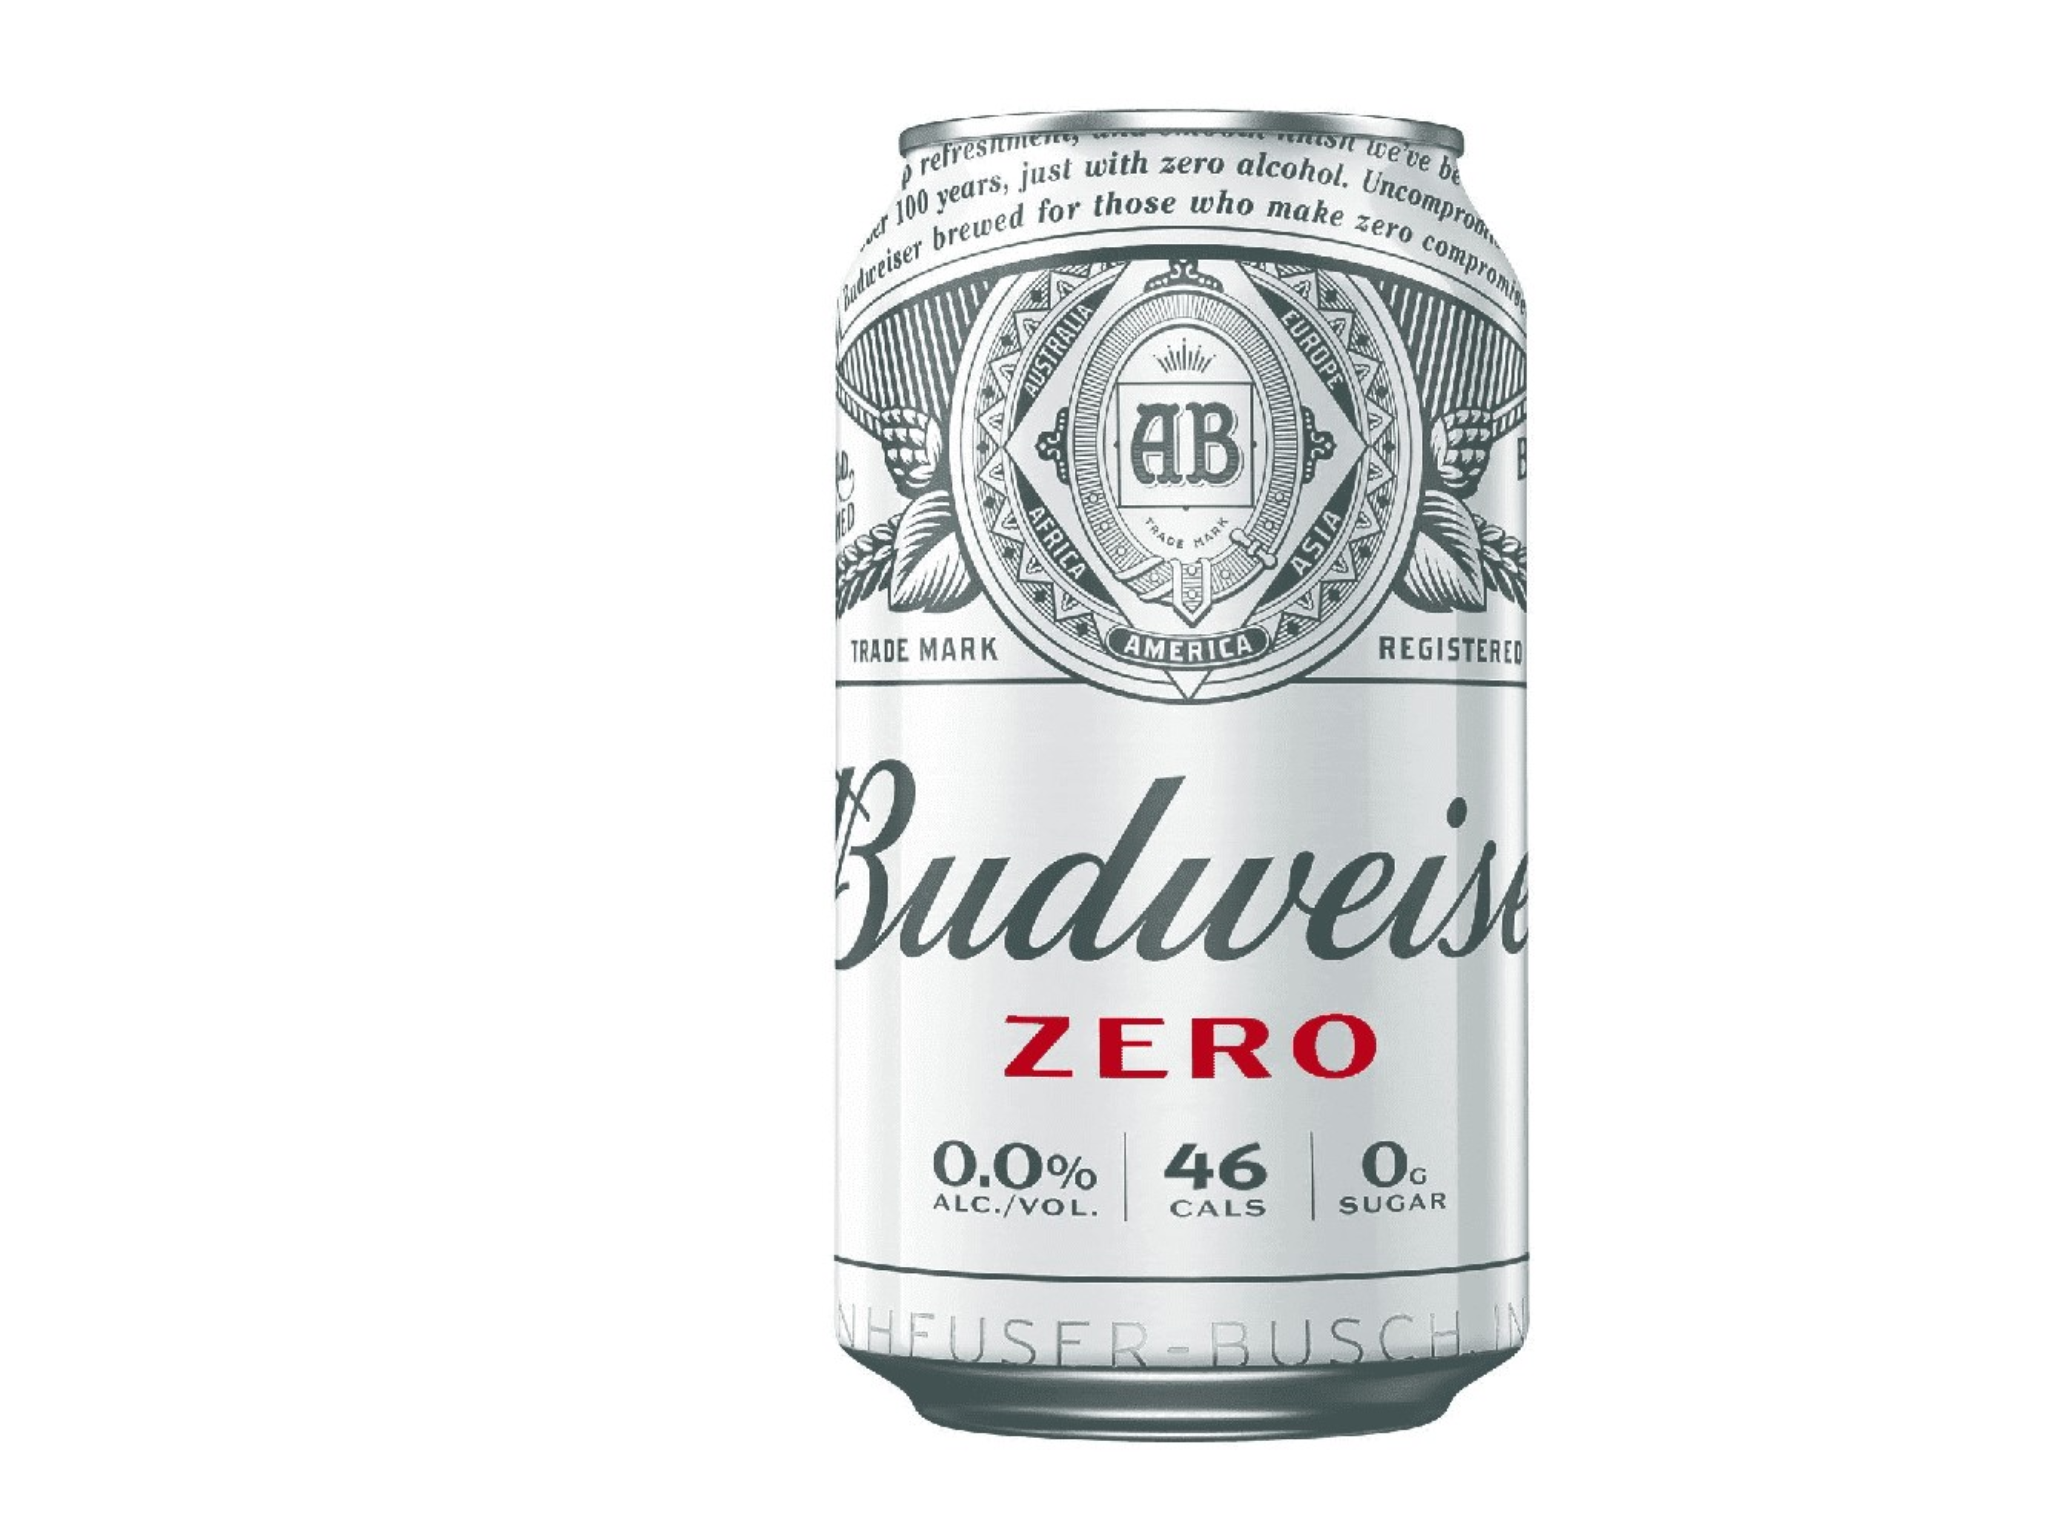 Budweiser Zero-indybest